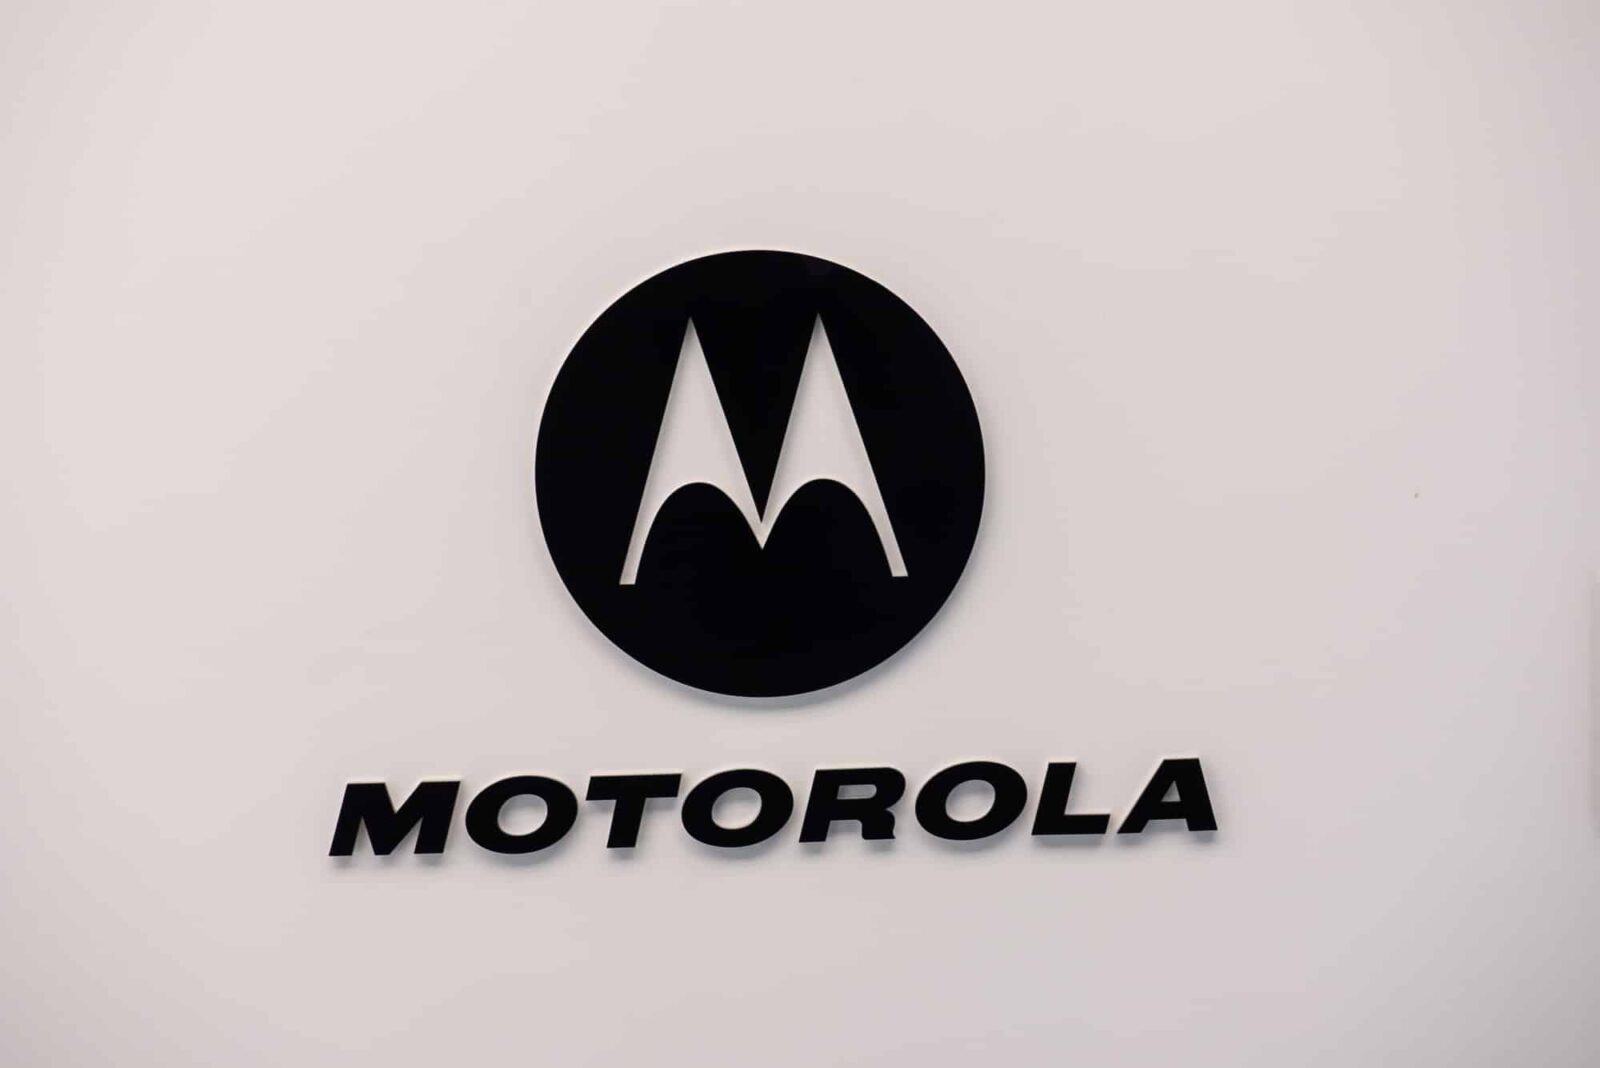 Motorola sceglie Milano per il suo prossimo evento internazionale thumbnail